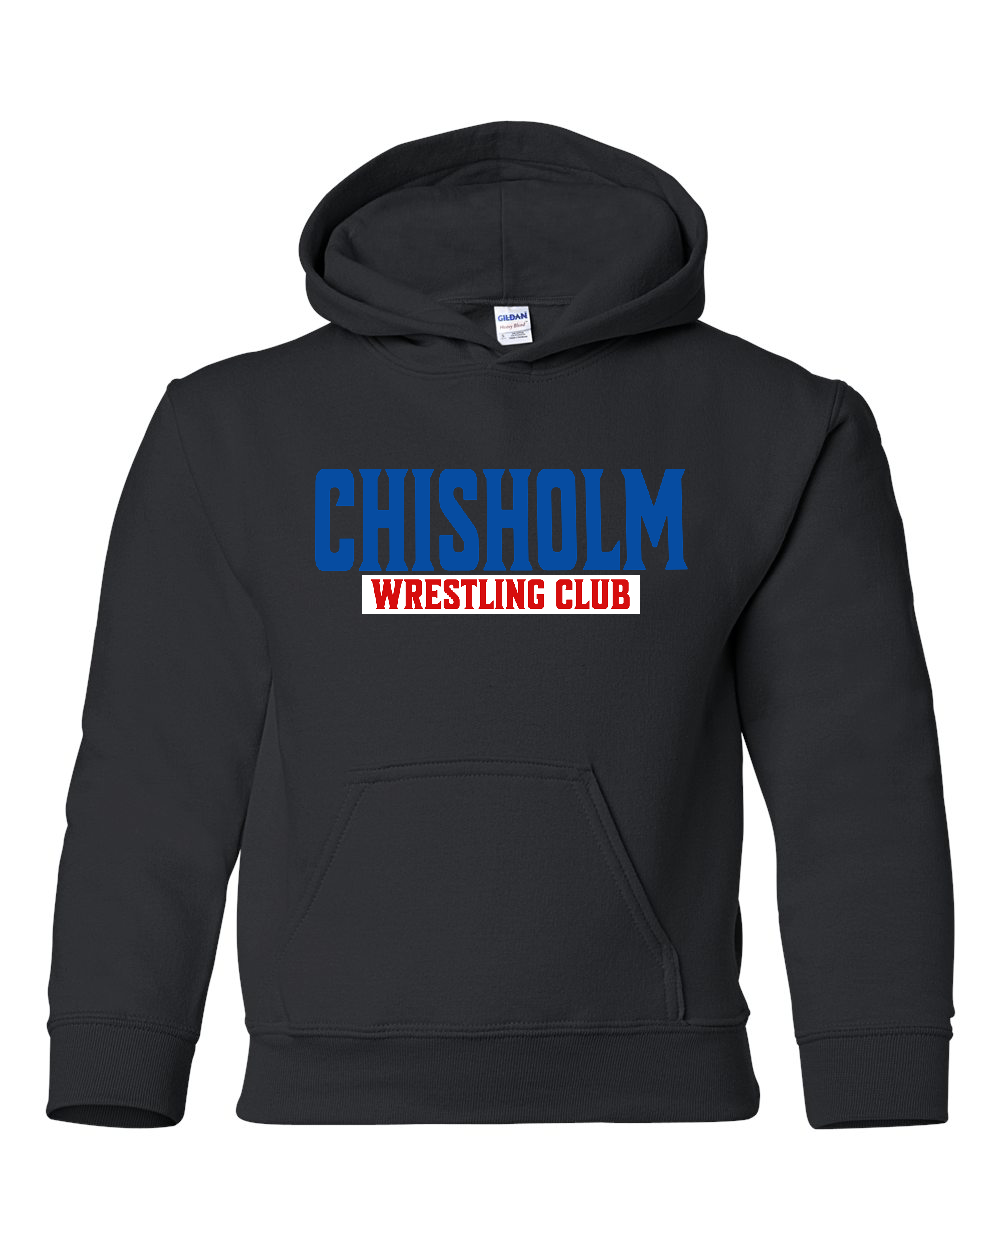 Chisholm Wrestling Club - Youth Hoodie